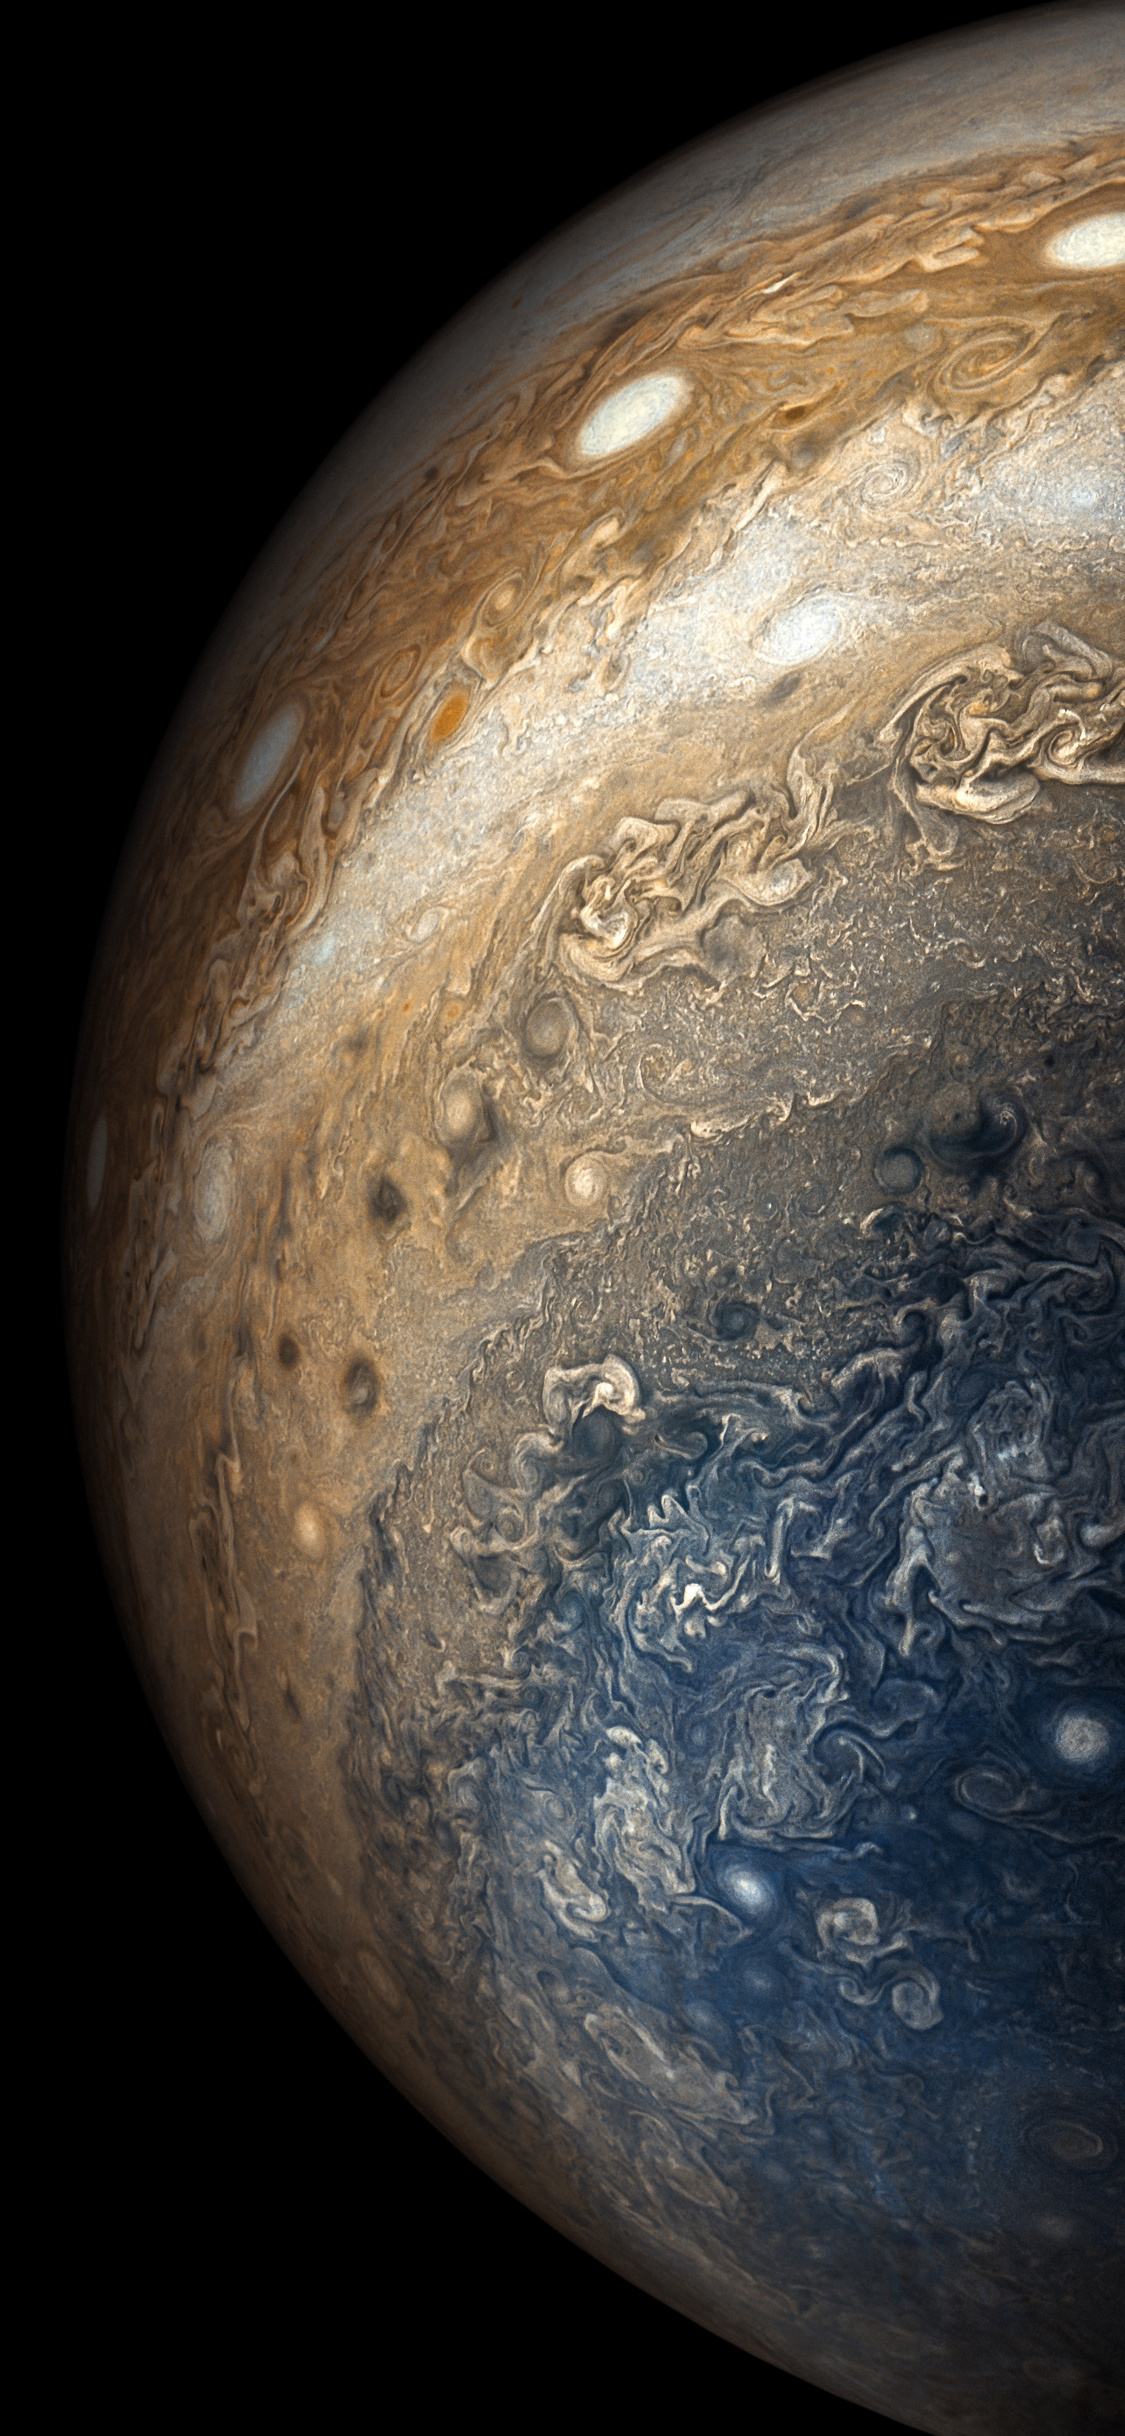 Jupiter - hành tinh lớn nhất trong hệ mặt trời. Hãy xem những hình ảnh đầy kỳ thú của hành tinh này và khám phá những điều bí ẩn còn chưa được phát hiện. Jupiter có sắc thái lôi cuốn, những đường nét hoàn hảo của nó đầy bí ẩn và đem lại cho chúng ta những trải nghiệm hết sức thú vị. 